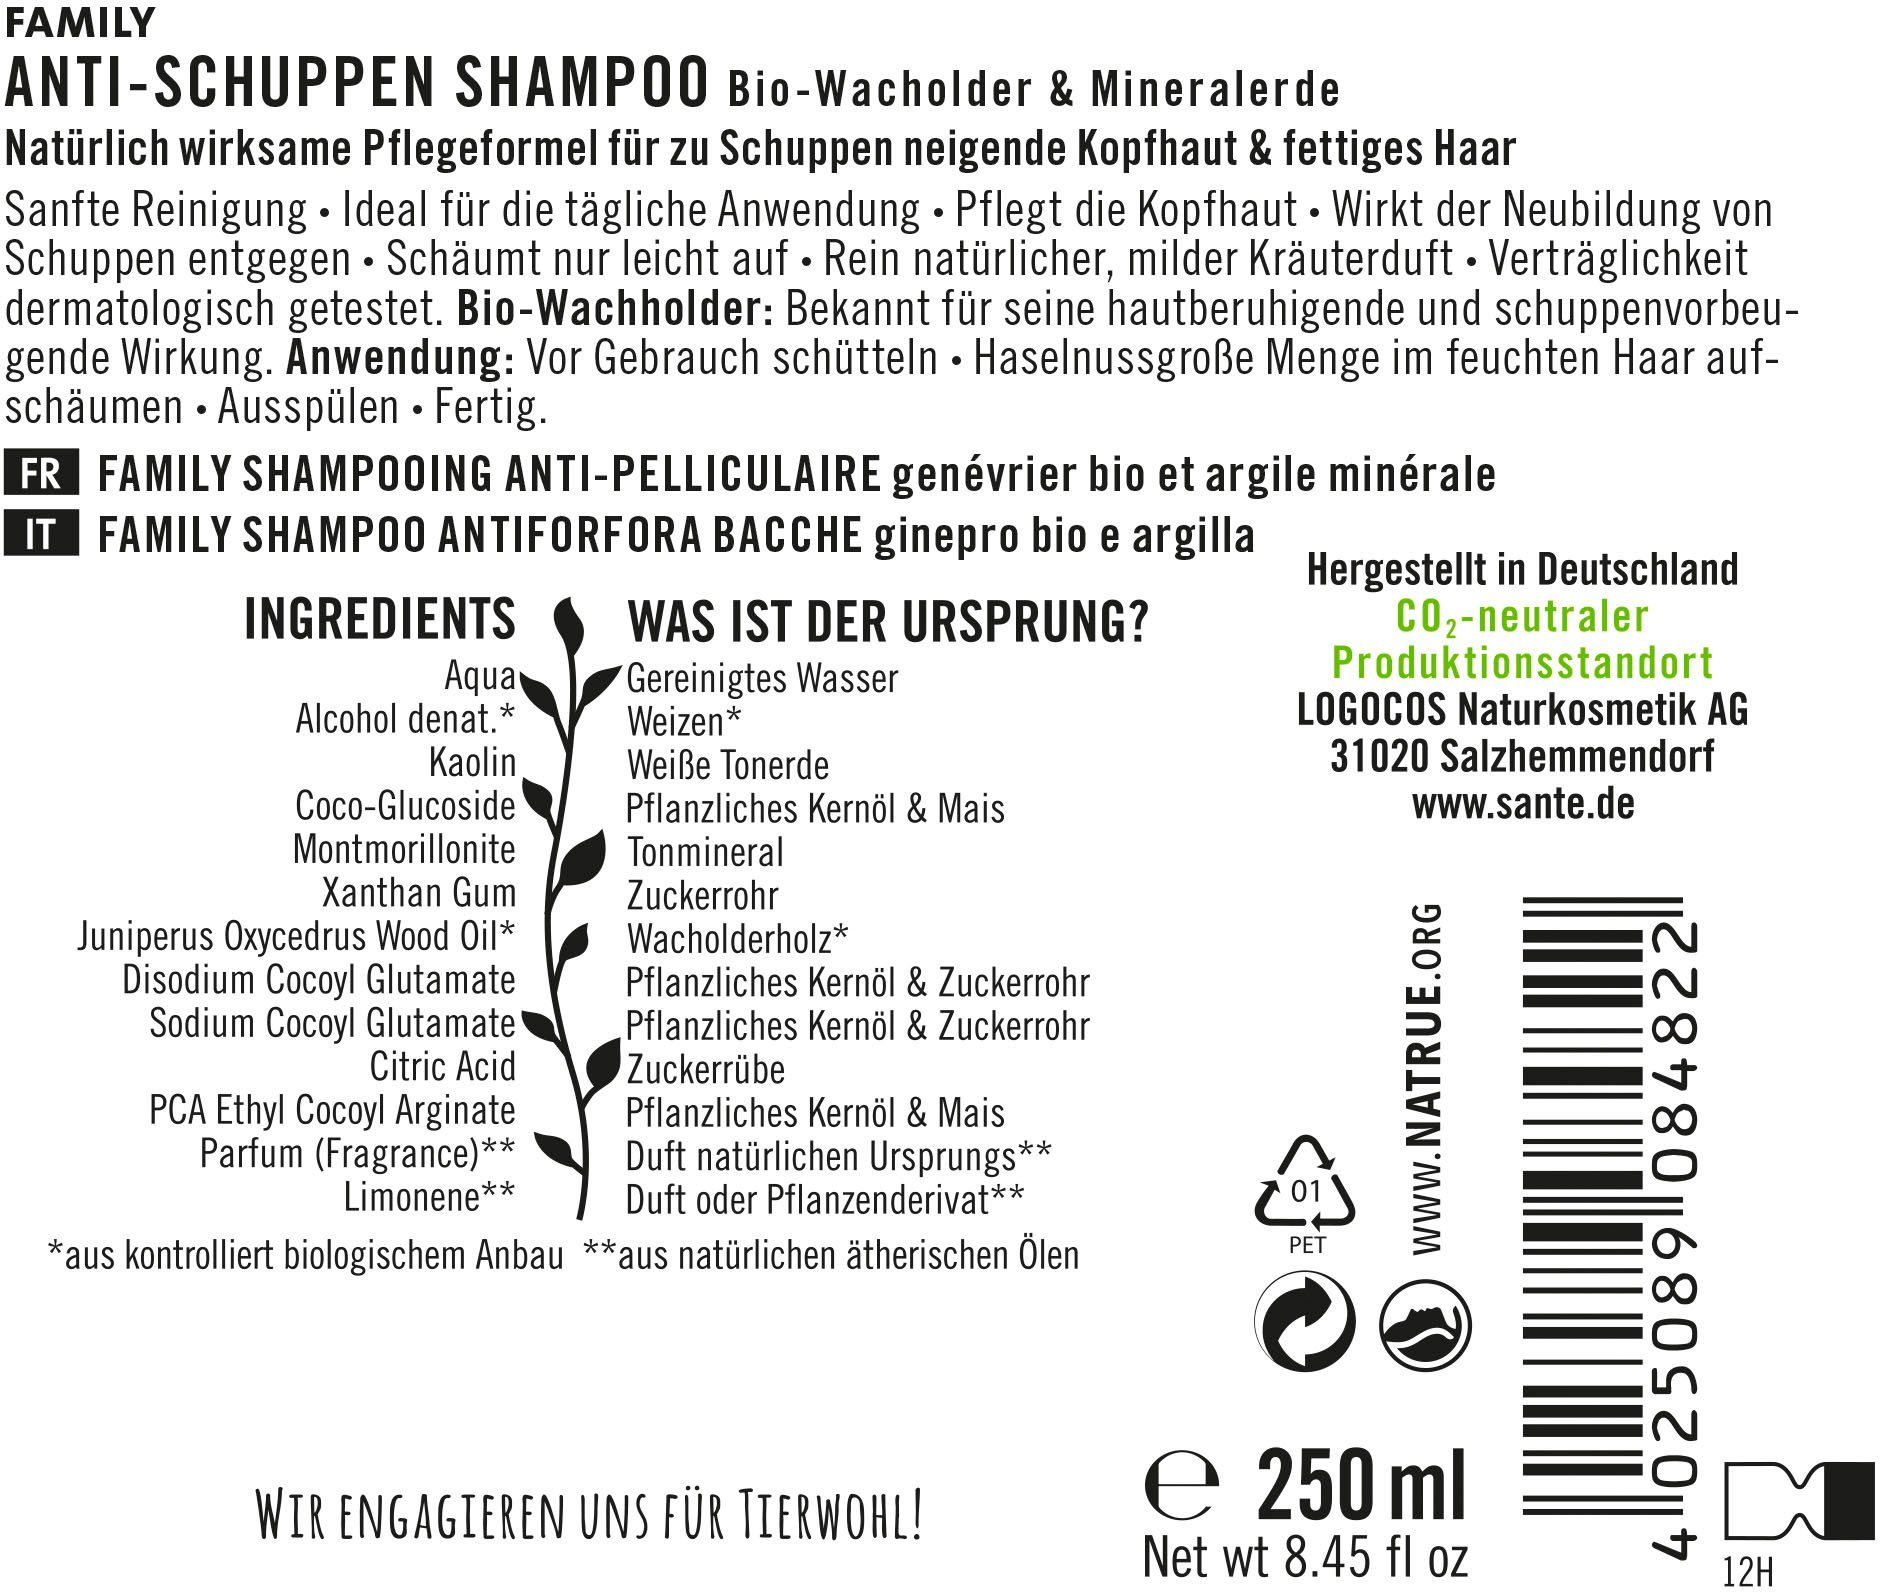 Haarshampoo FAMILY SANTE Shampoo Anti-Schuppen